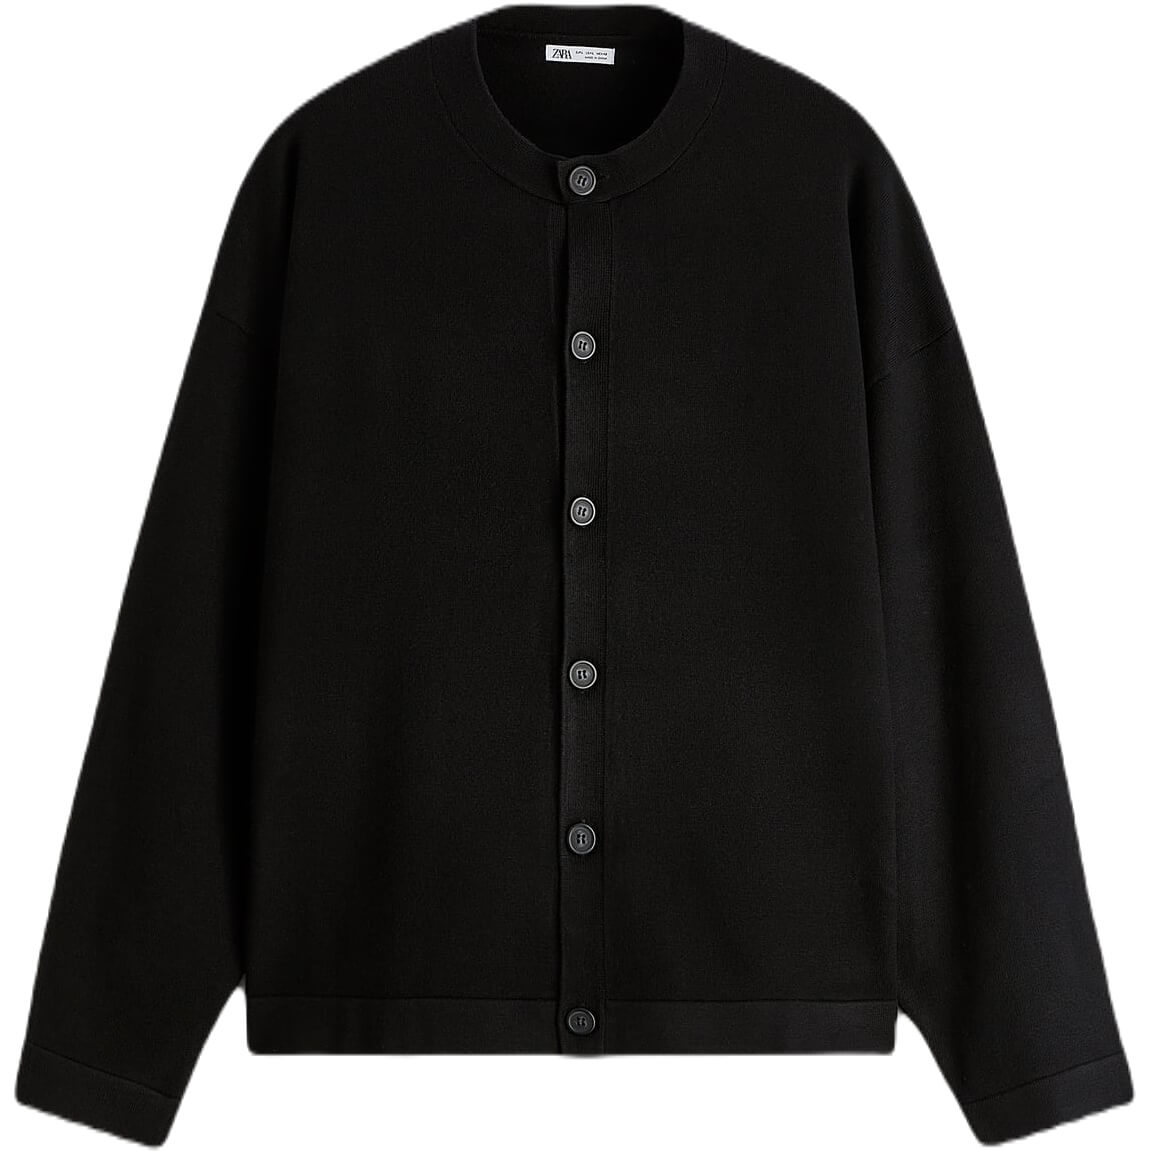 Кардиган Zara Textured, черный кардиган zara размер 130 черный